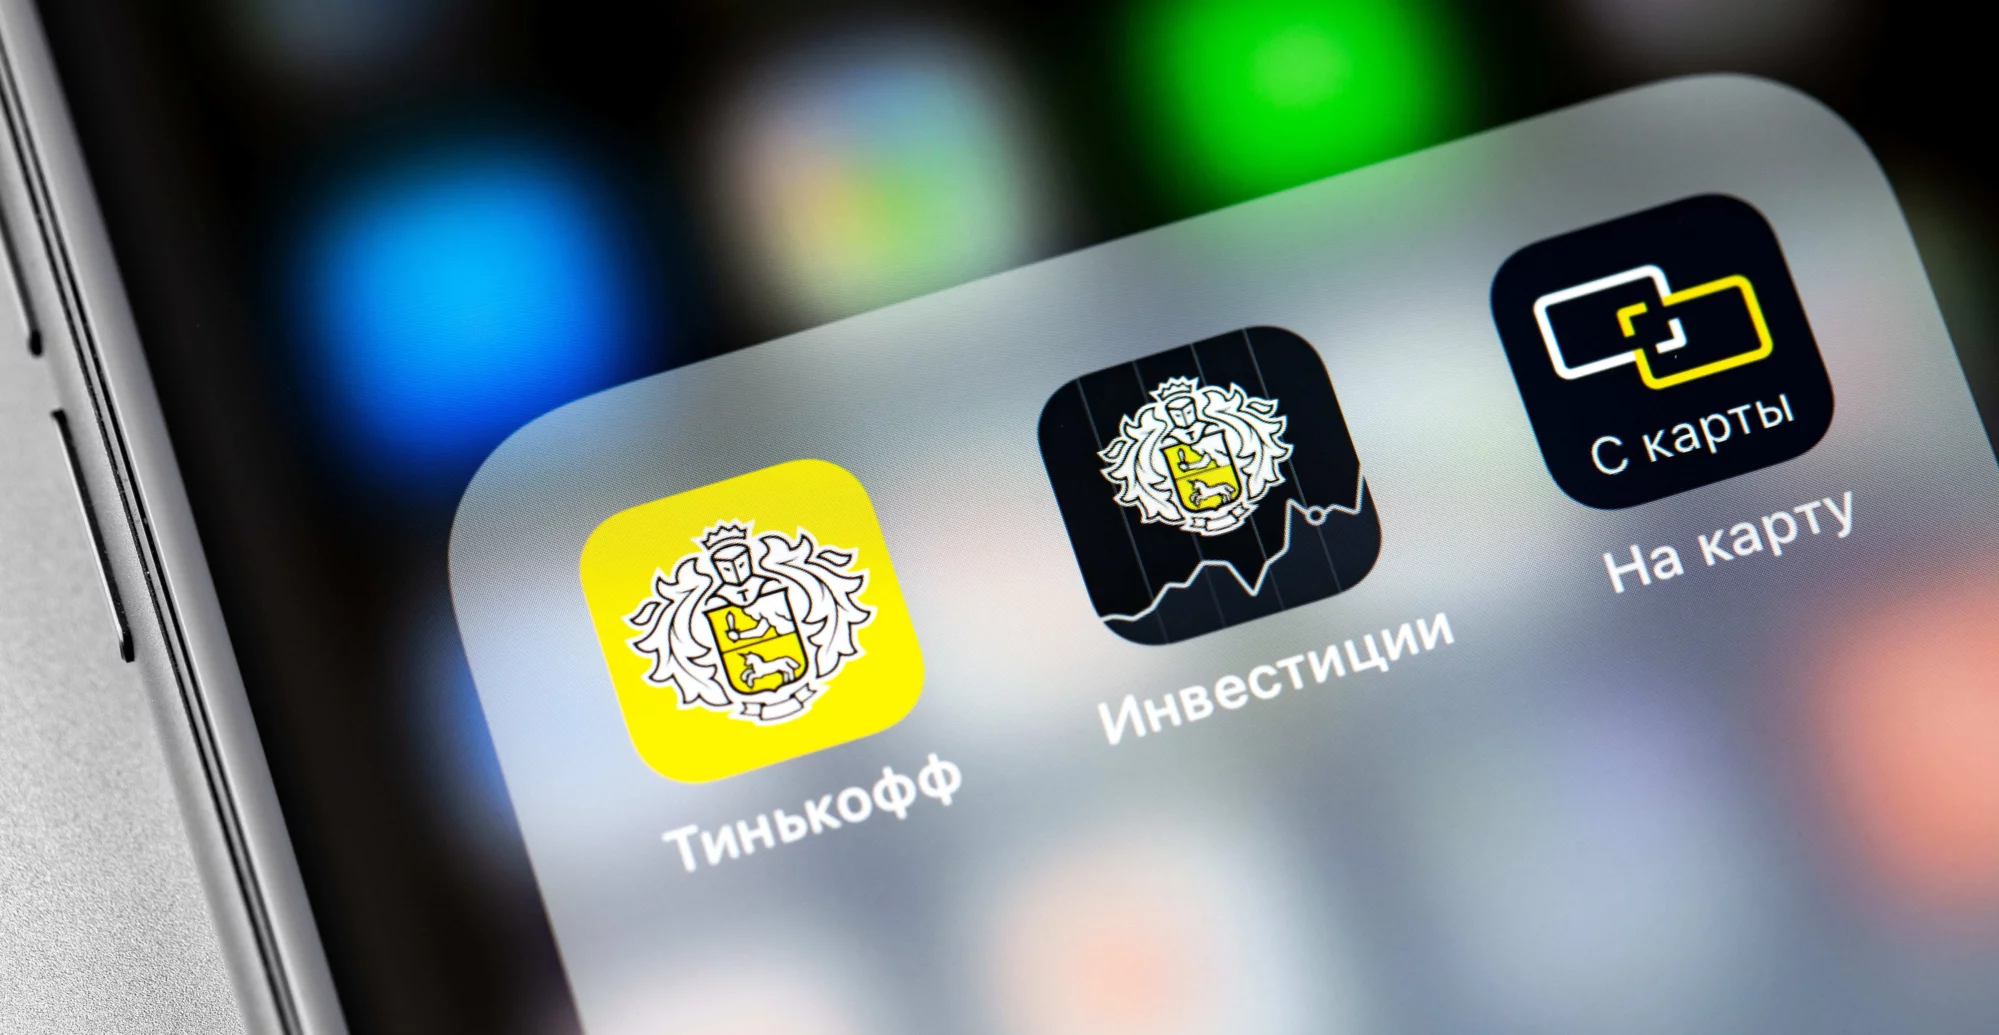 Приложения Тинькофф, Уралсиб и других банков исчезли из App Store. Как скачать их после удаления?